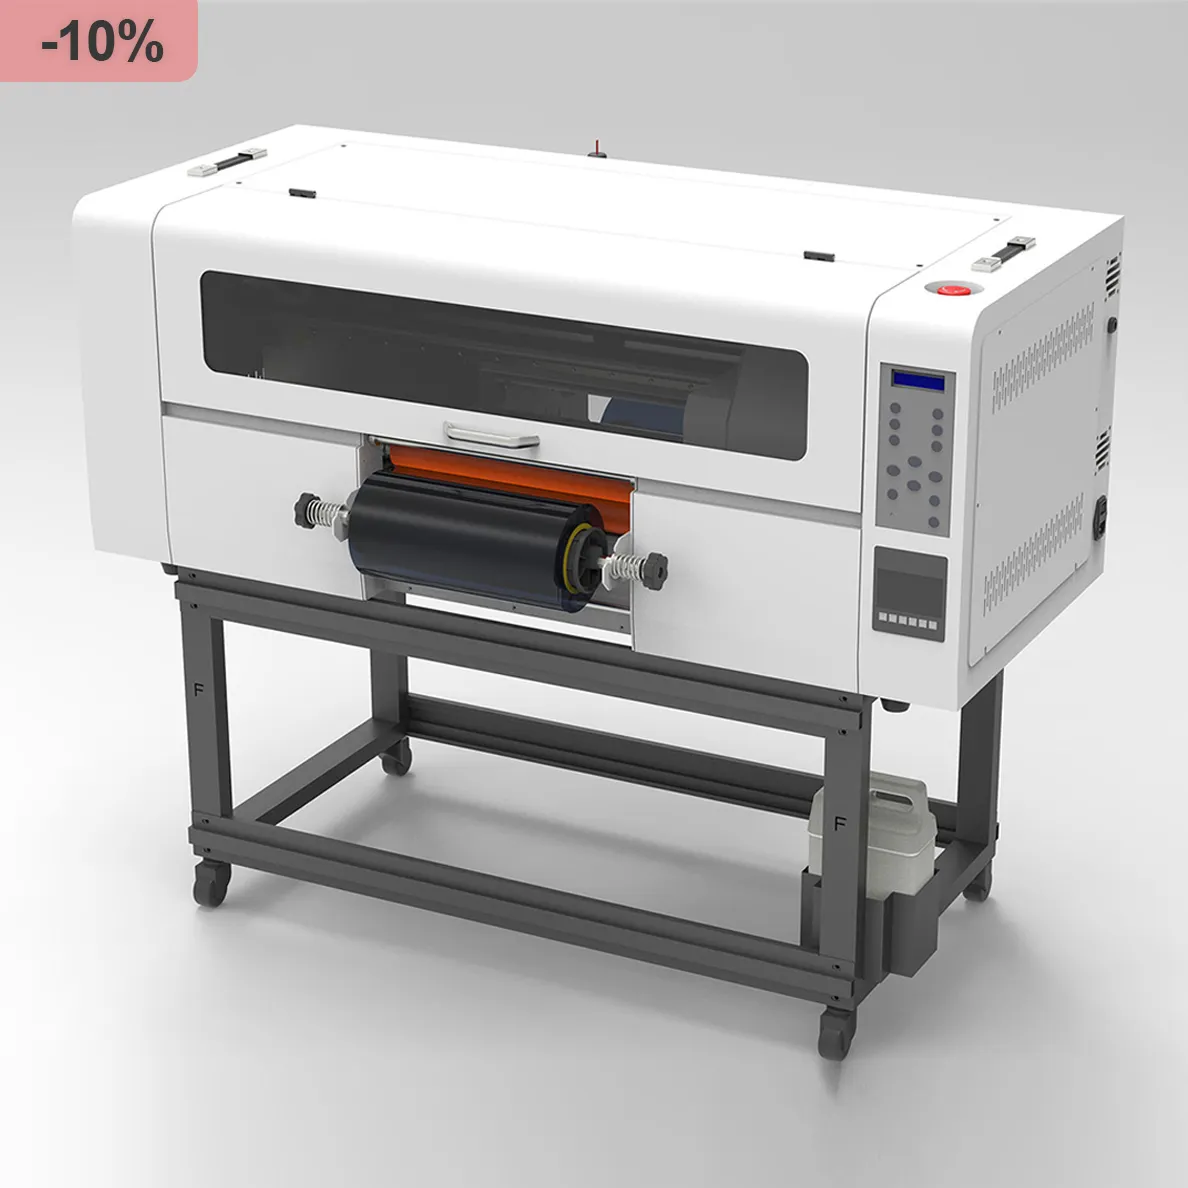 Impressora UV Dtf para madeira e vidro, preço de fábrica, impressora UV Dtf para impressora por atacado, máquina de impressão i1600 UV Dtf rolo a rolo, impressora impressa